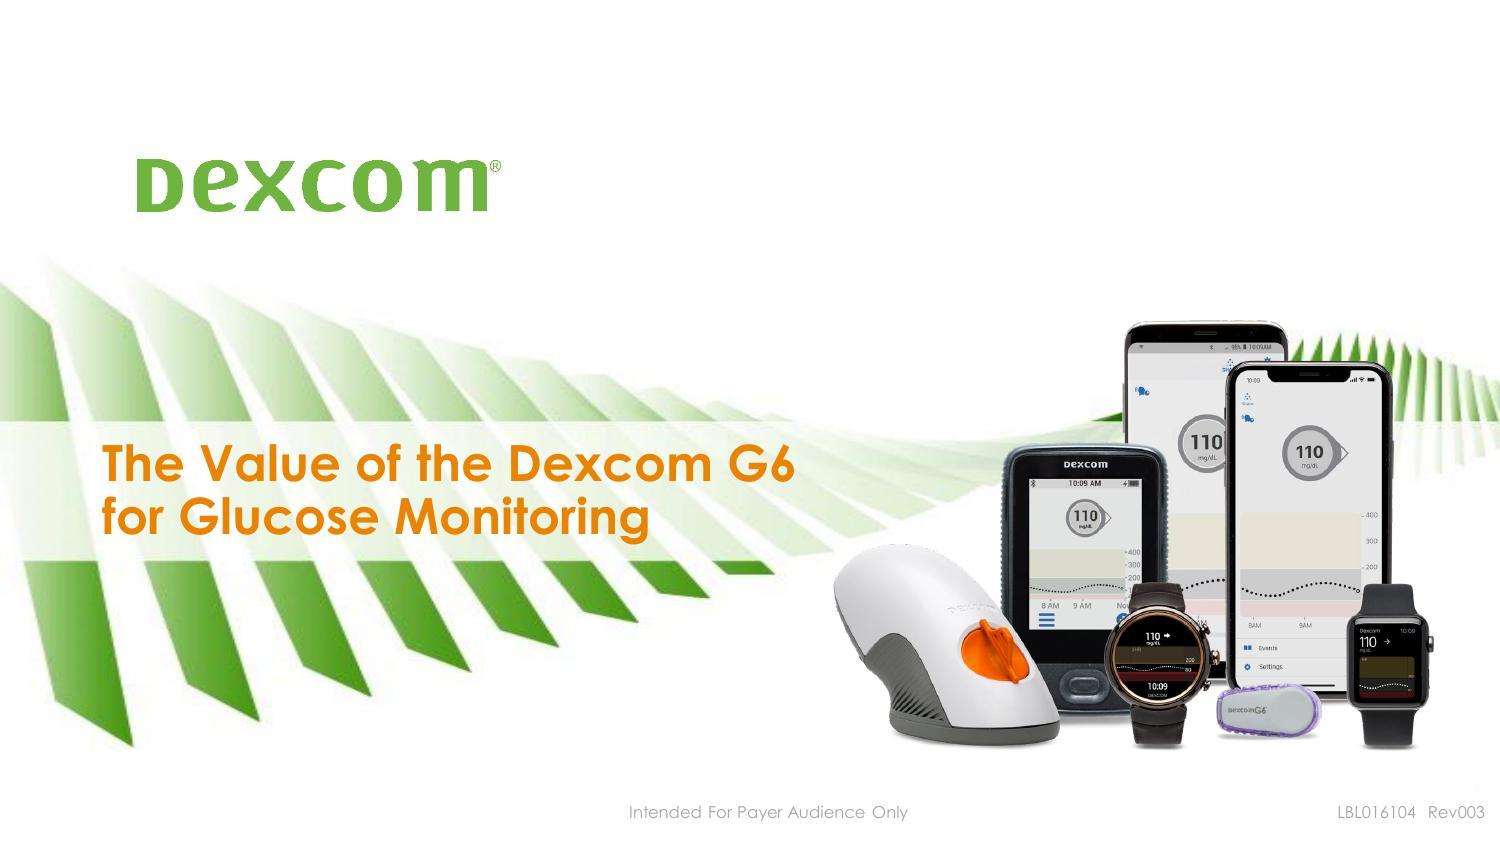 dexcom-g6-cgm-system-user-guide.pdf